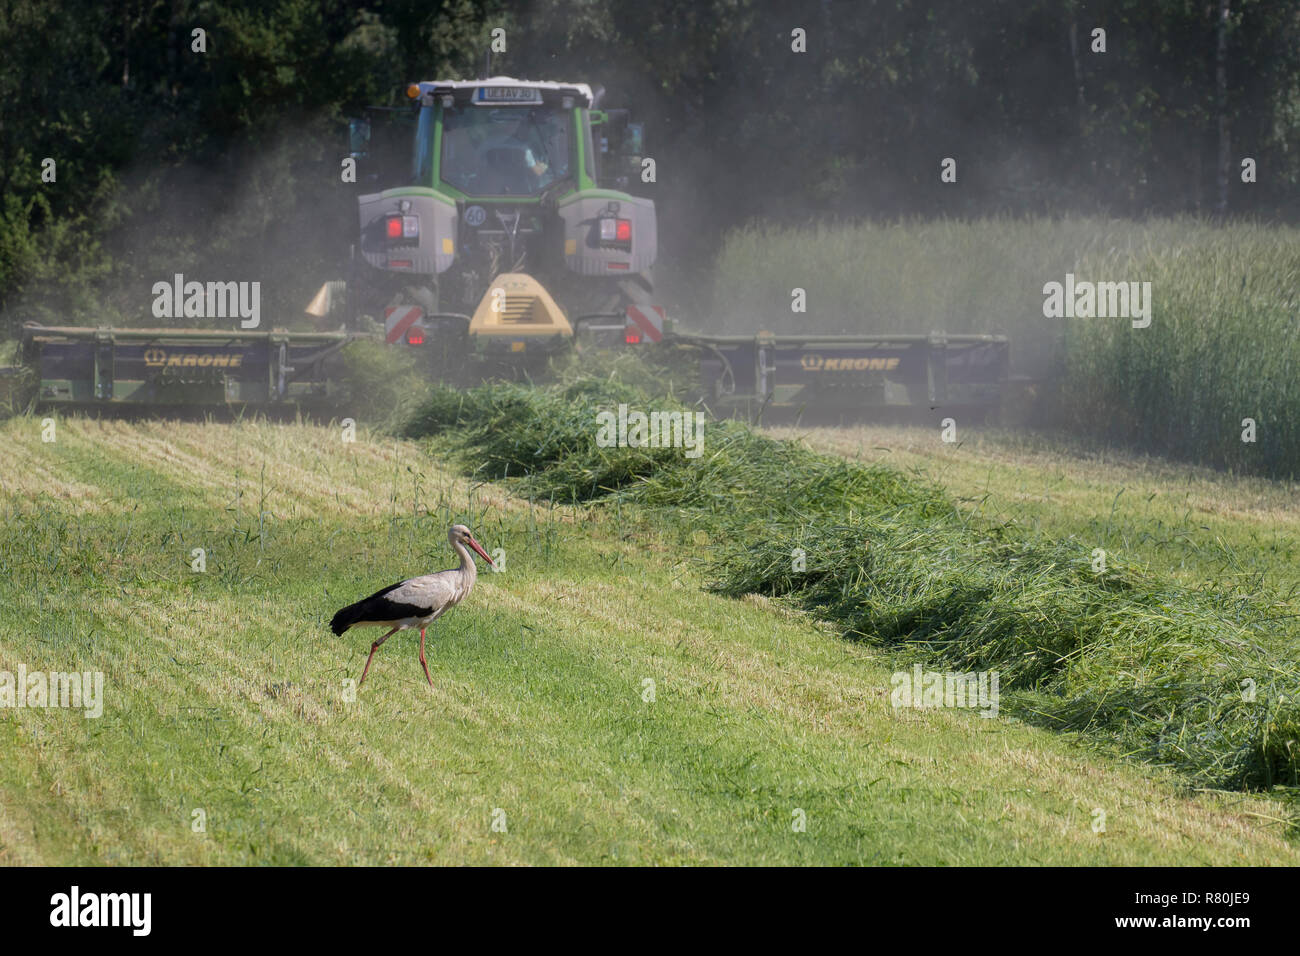 Unione Cicogna bianca (Ciconia ciconia). Adulto rovistando su un prato accanto ad una macchina rasaerba. Germania Foto Stock